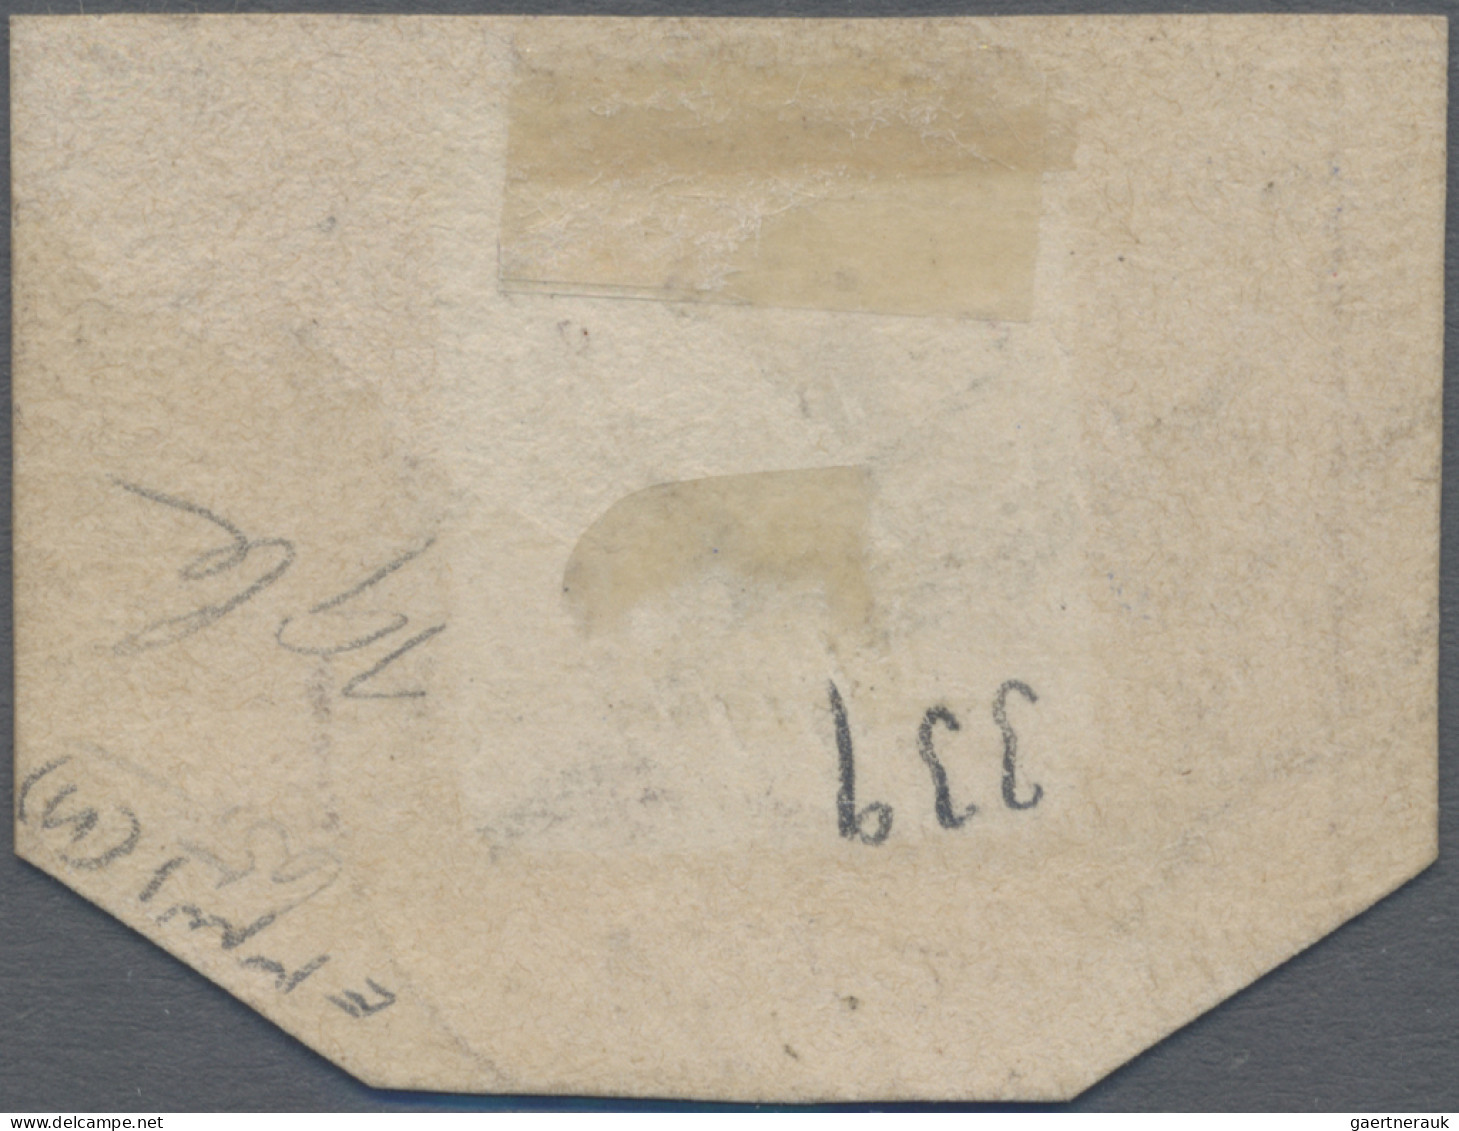 Helgoland - Marken Und Briefe: 1879, 1 Sh/1 M Grün/schwarz/rosa Im Waagerechten - Héligoland